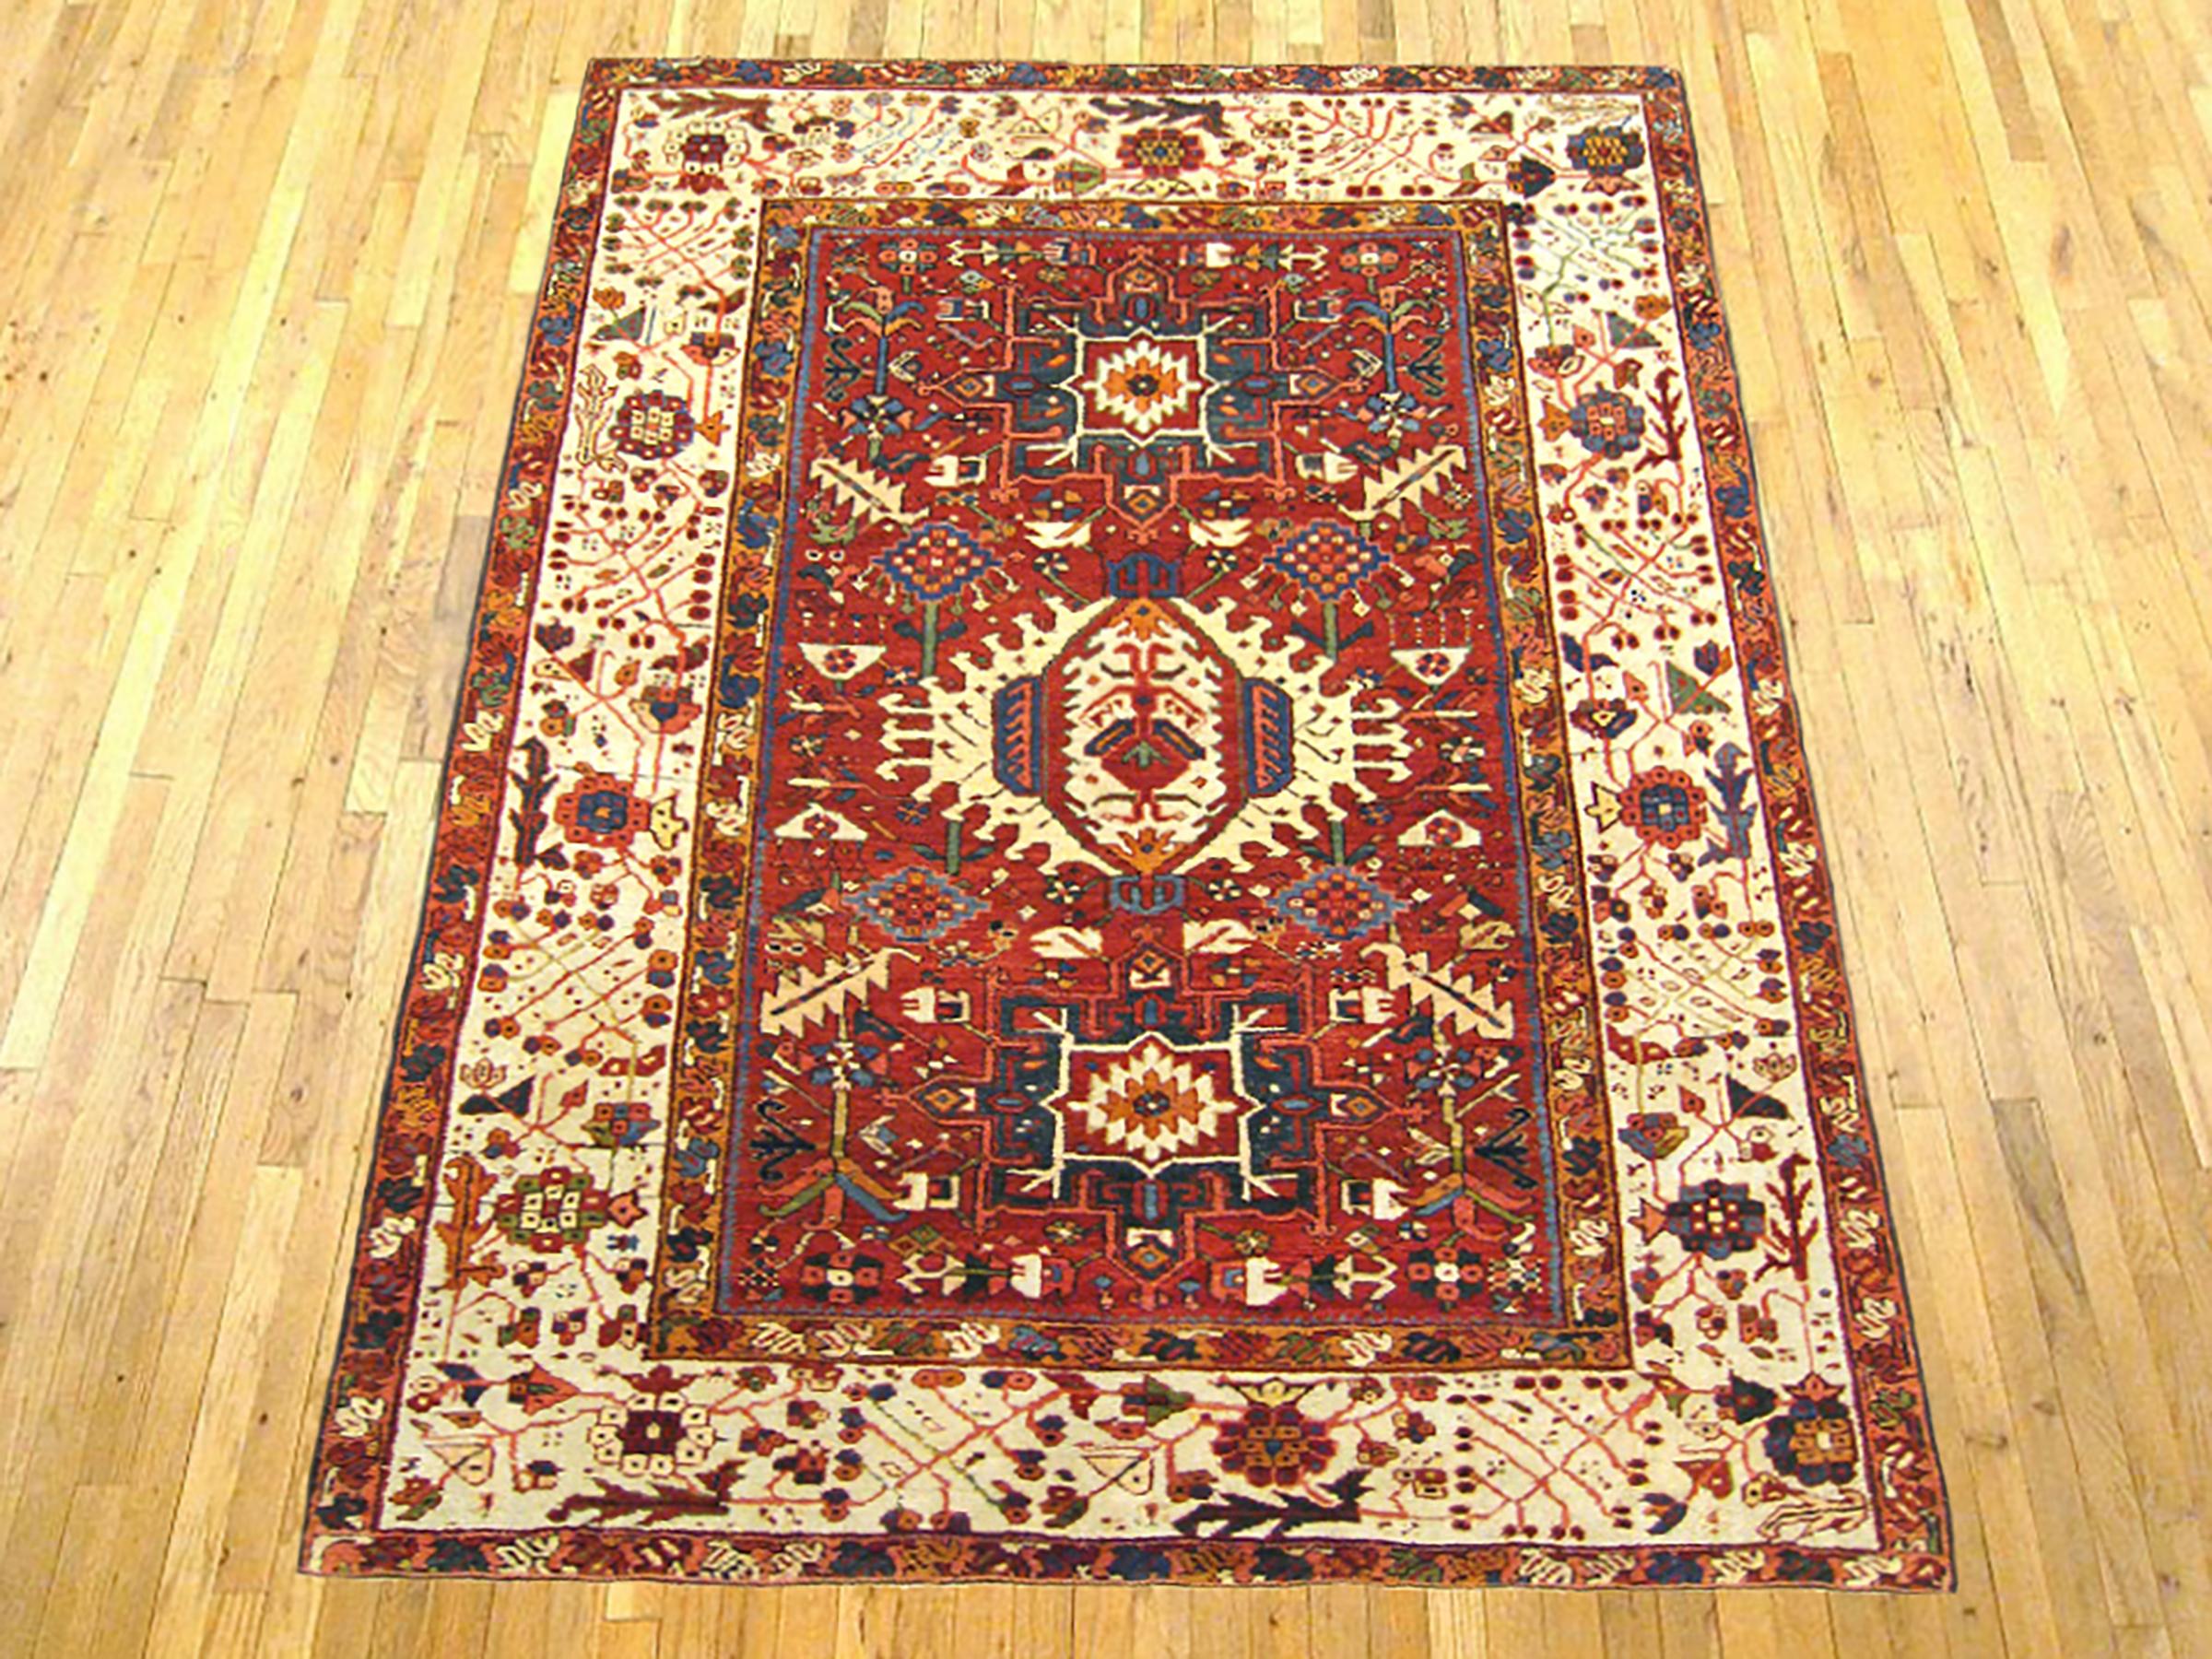 Antique Persian Heriz Karaja Oriental rug, in room size.

An antique Persian Heriz Karaja oriental rug, size 6'3